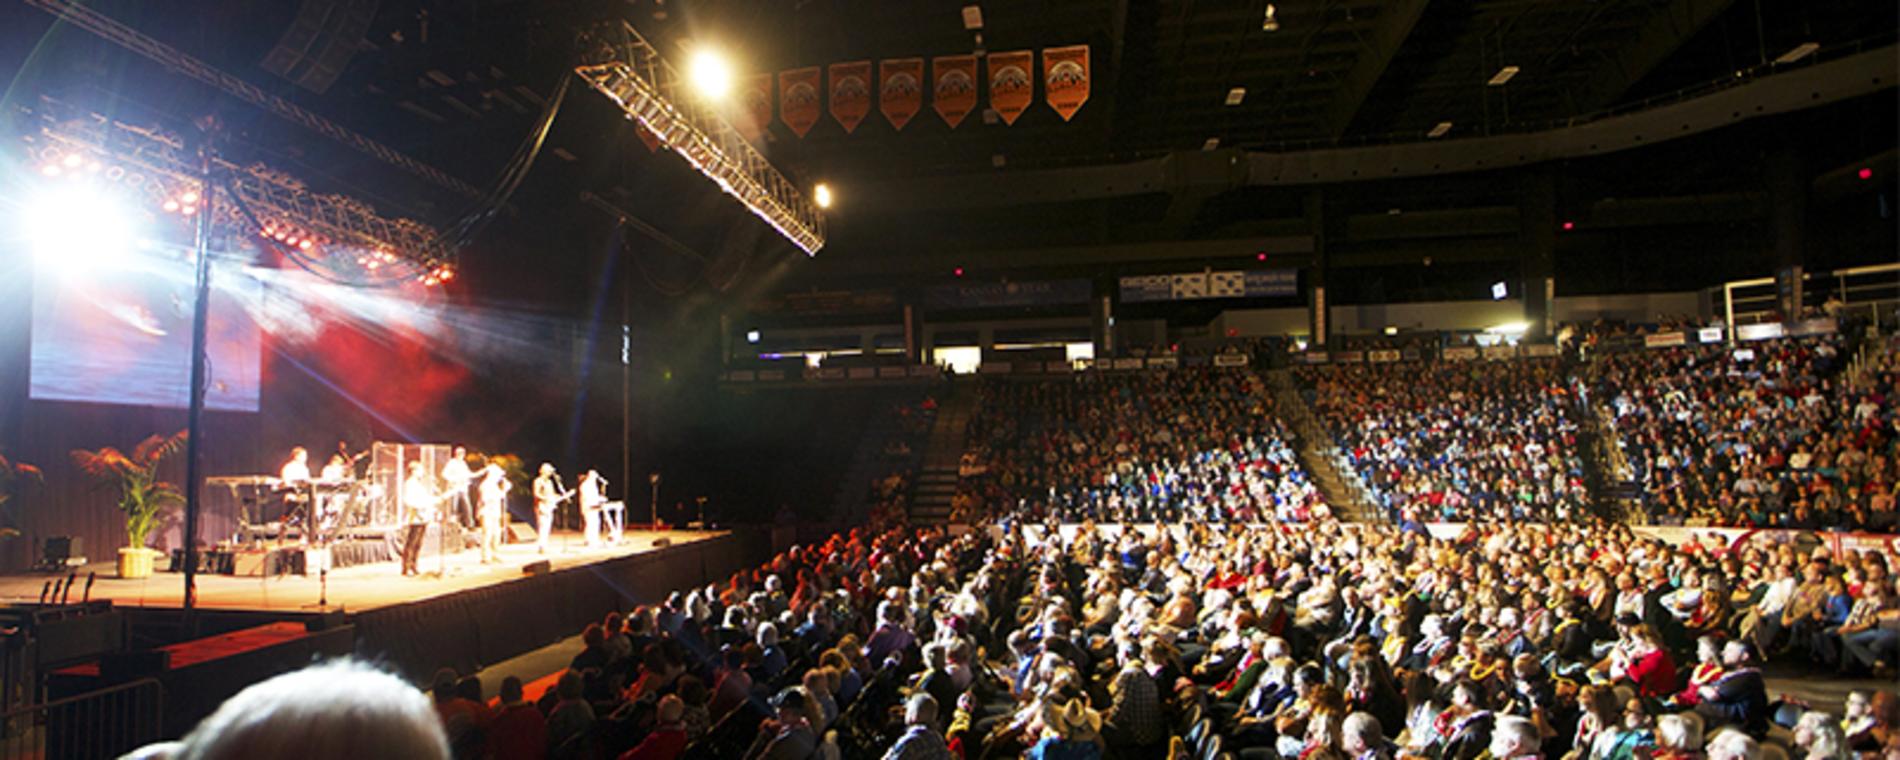 Hartman Arena stage Visit Wichita